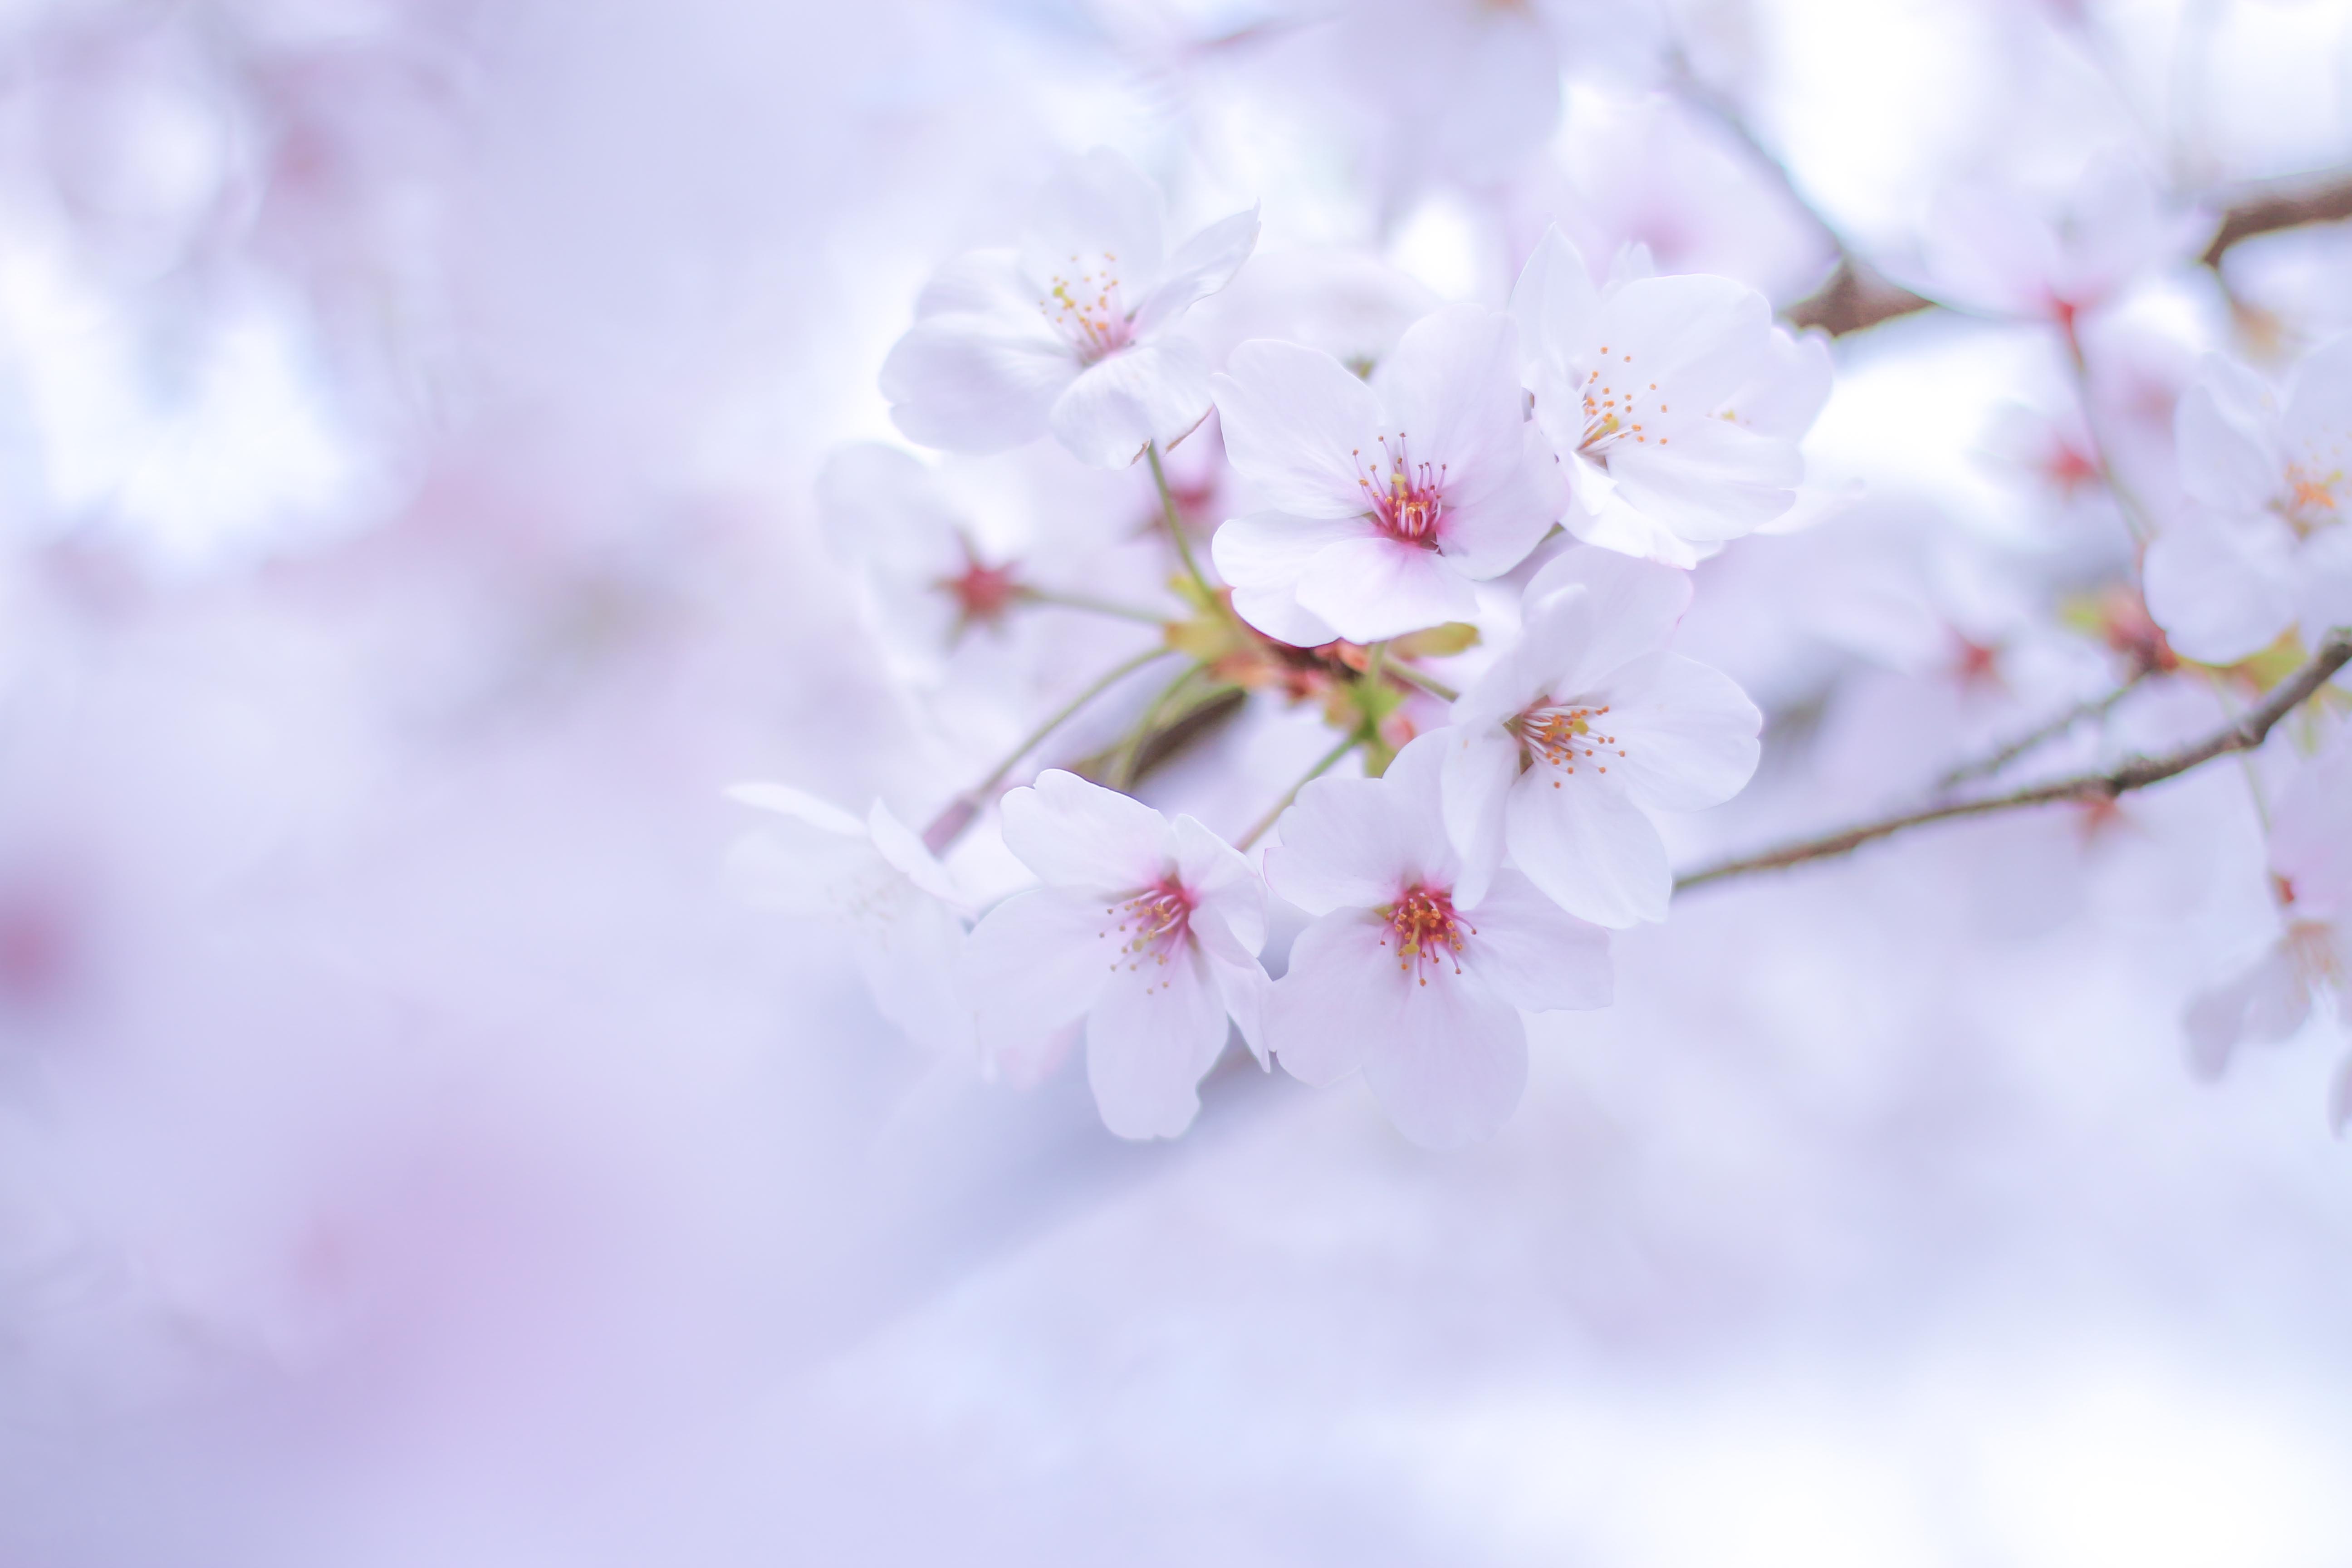 中級編 夜桜編 スマホじゃ撮れない桜の撮り方 Snsで目を惹くような幻想的な夜桜を撮りに行こう カメラ女子必見 お花の撮り方